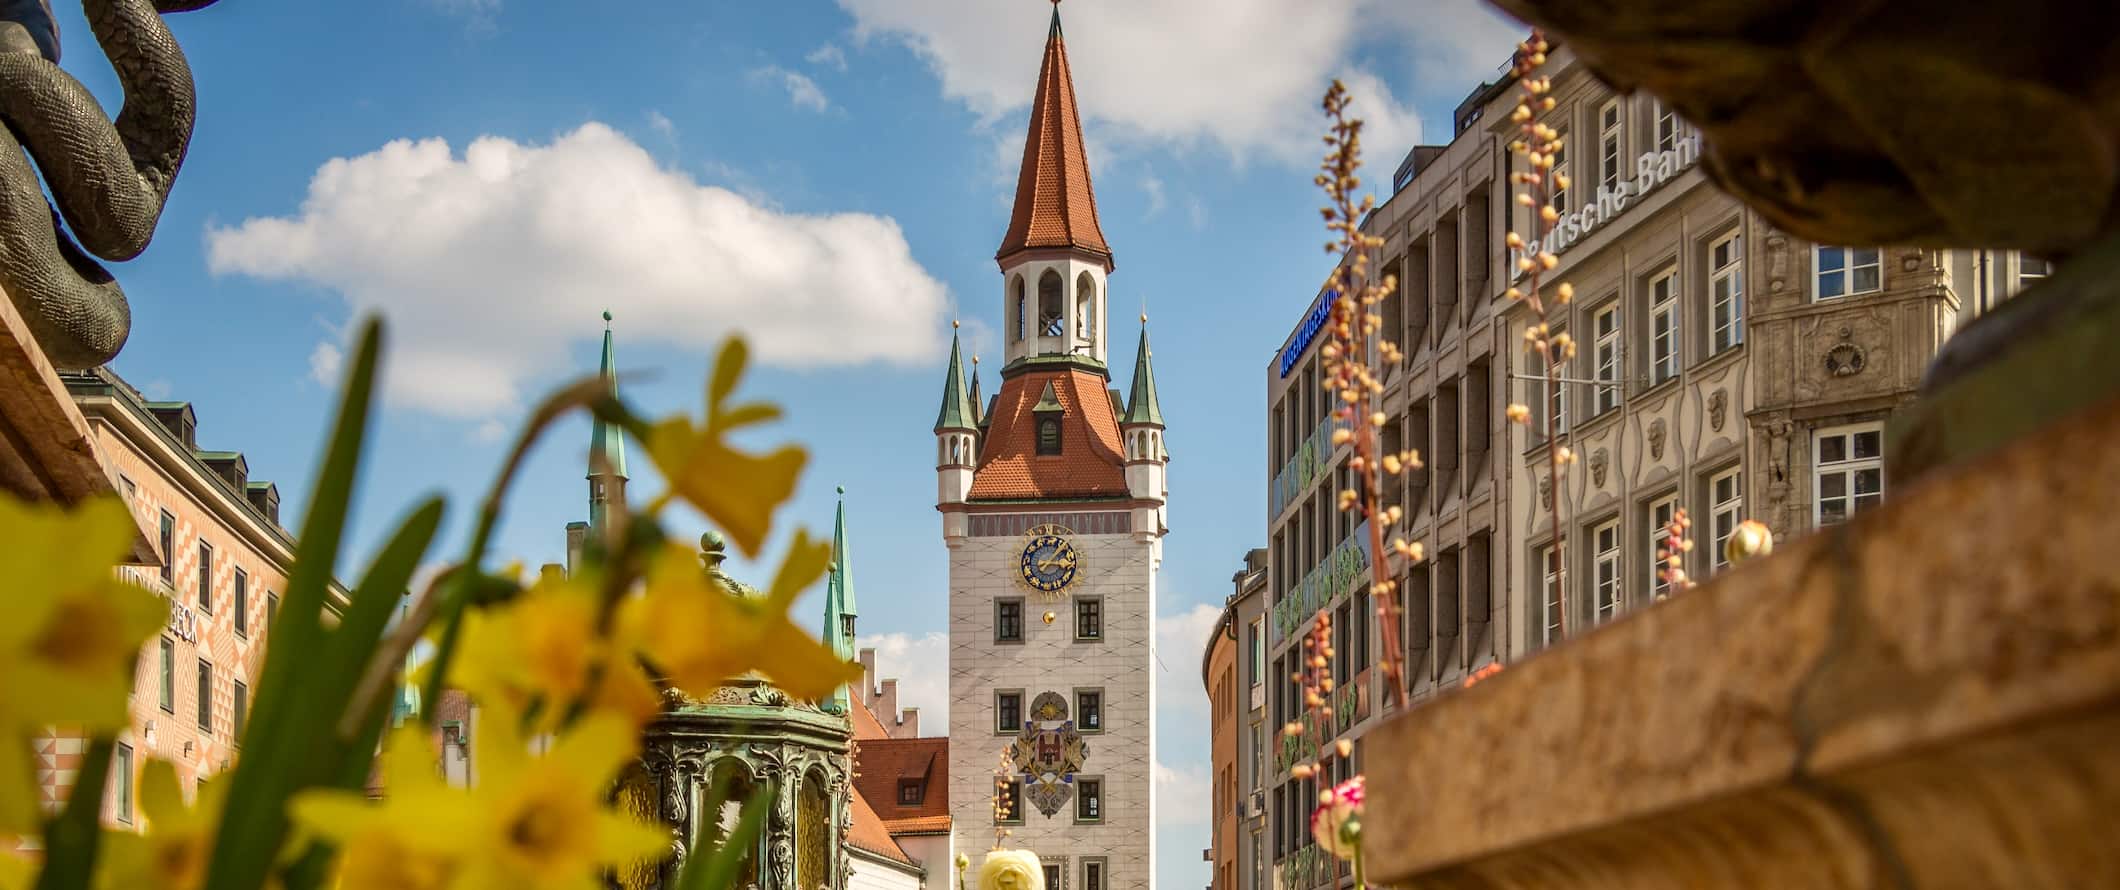 Cidade histórica de Munique, Alemanha, na primavera com flores desabrochando perto da igreja